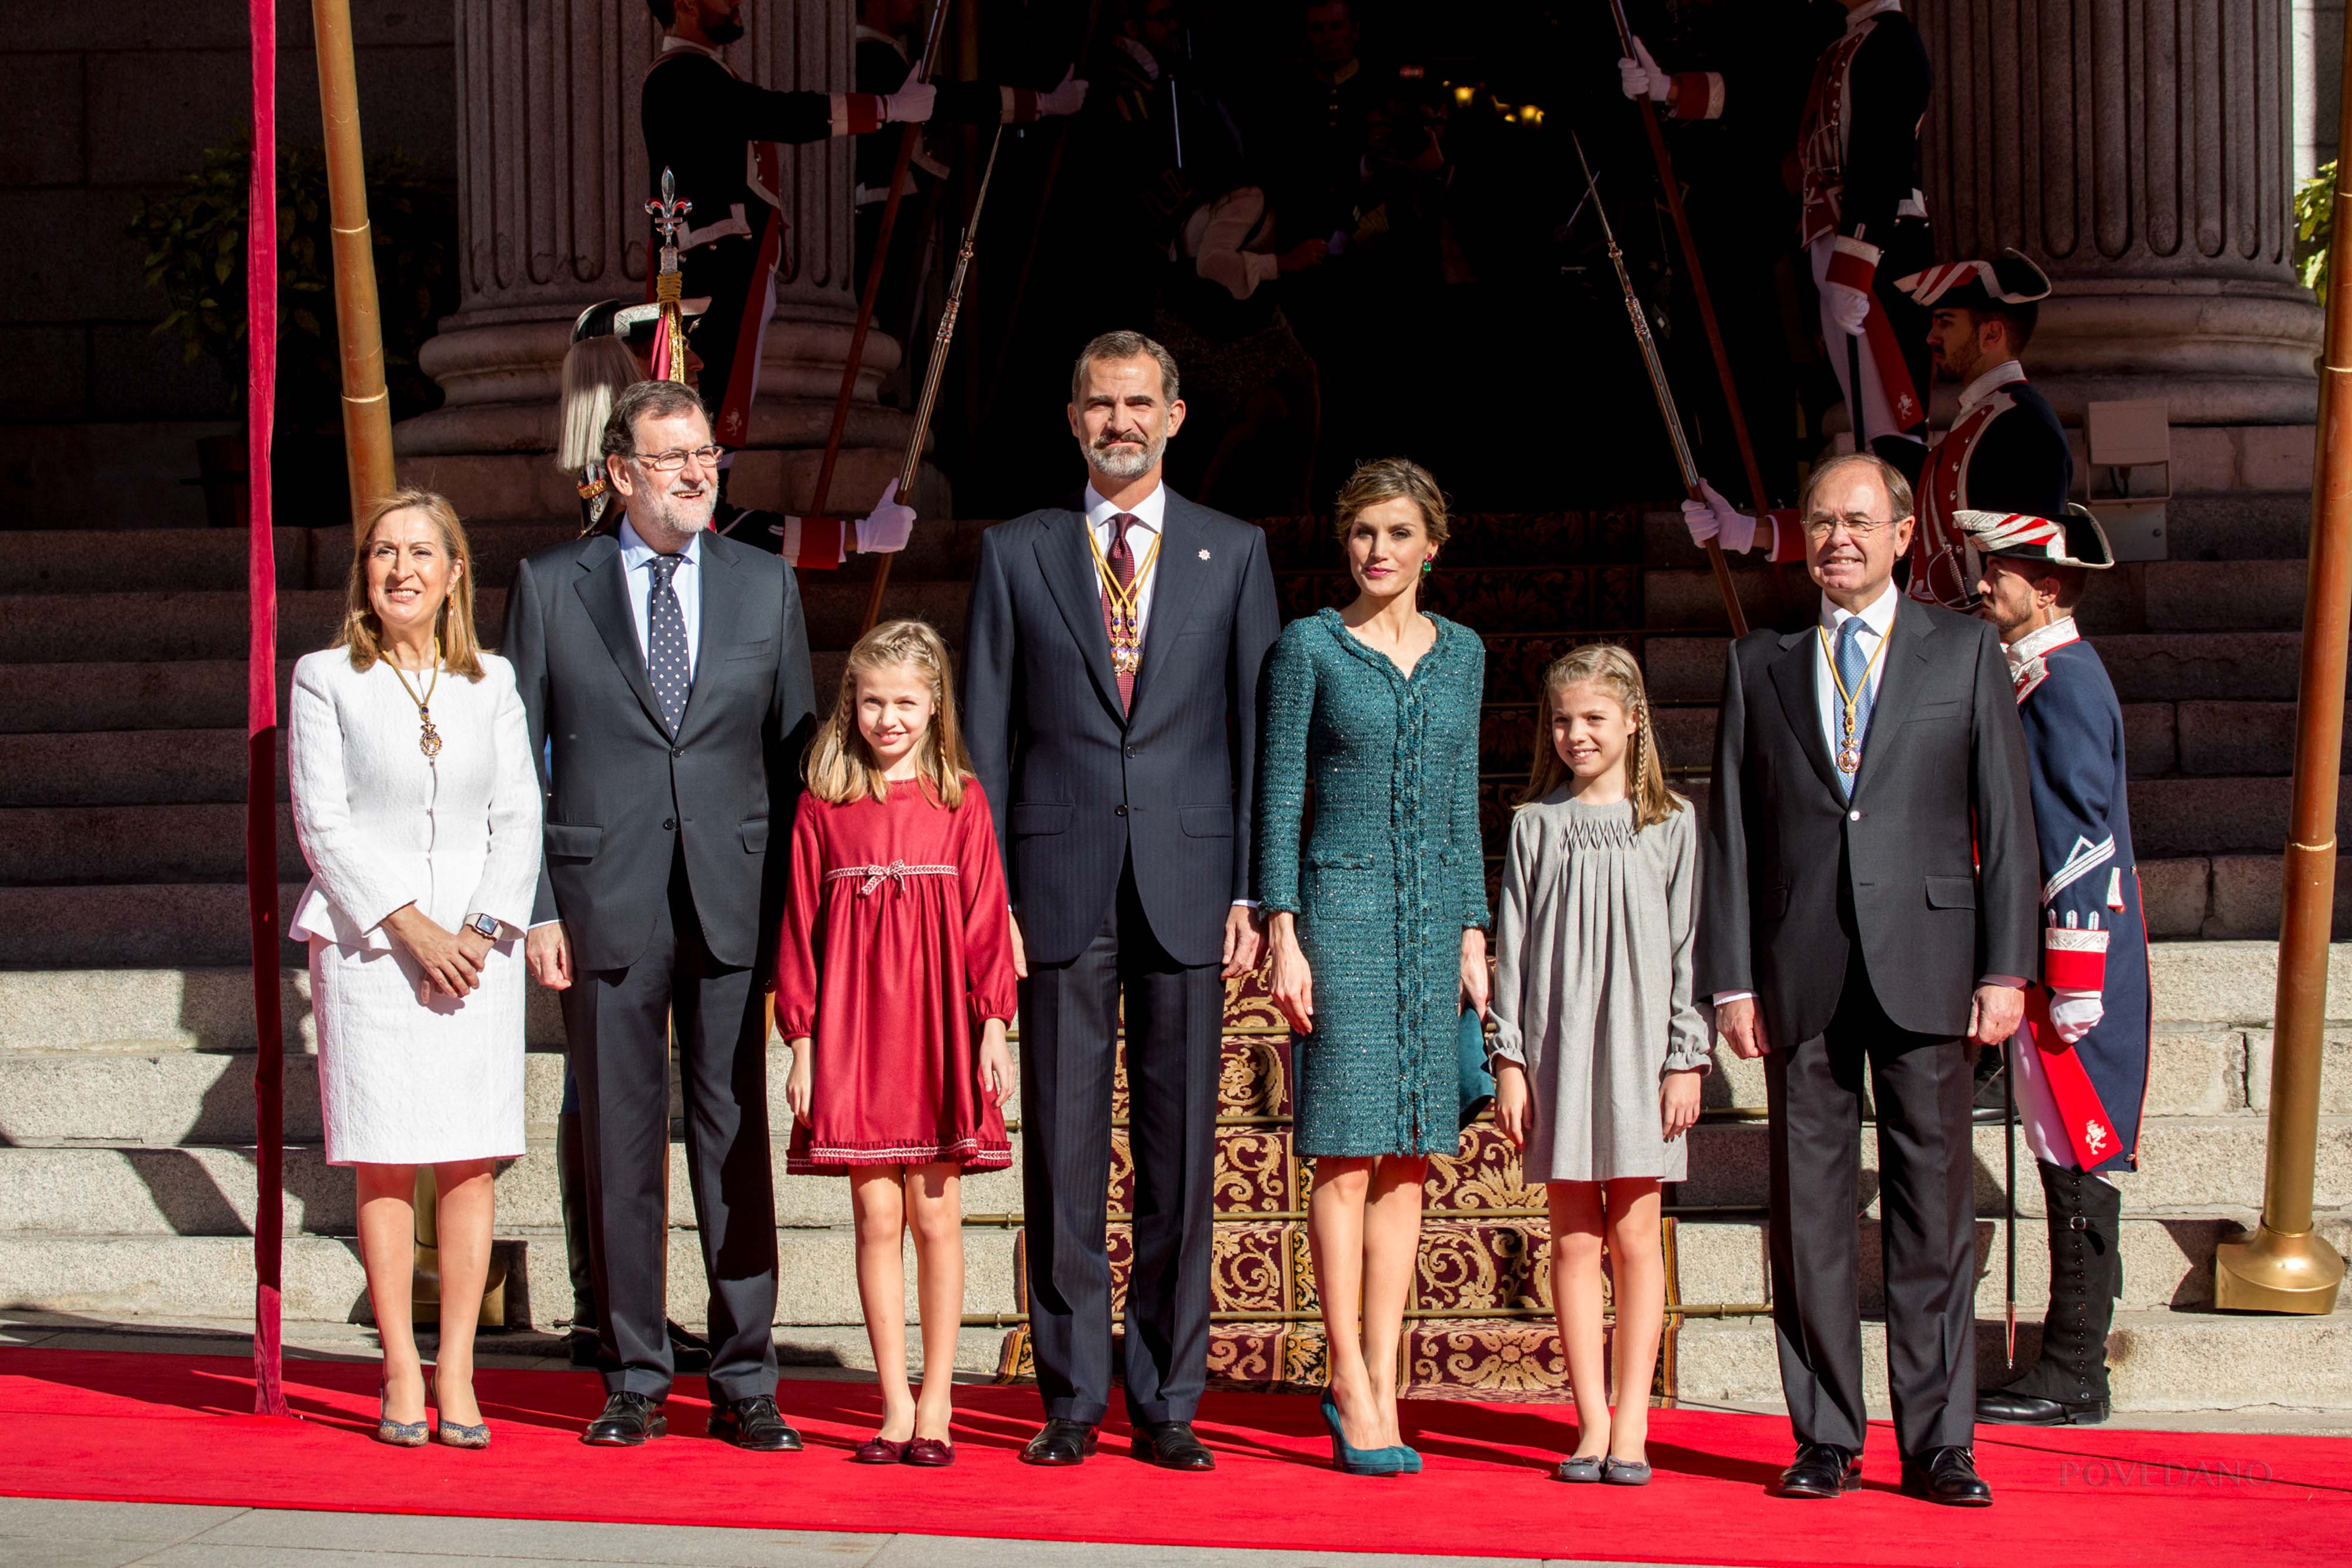 La Familia Real junto al Presidente del Gobierno y a los Presidentes de ambas Cámaras en la escalinata antes de entrar en el Palacio del Congreso de los Diputados.